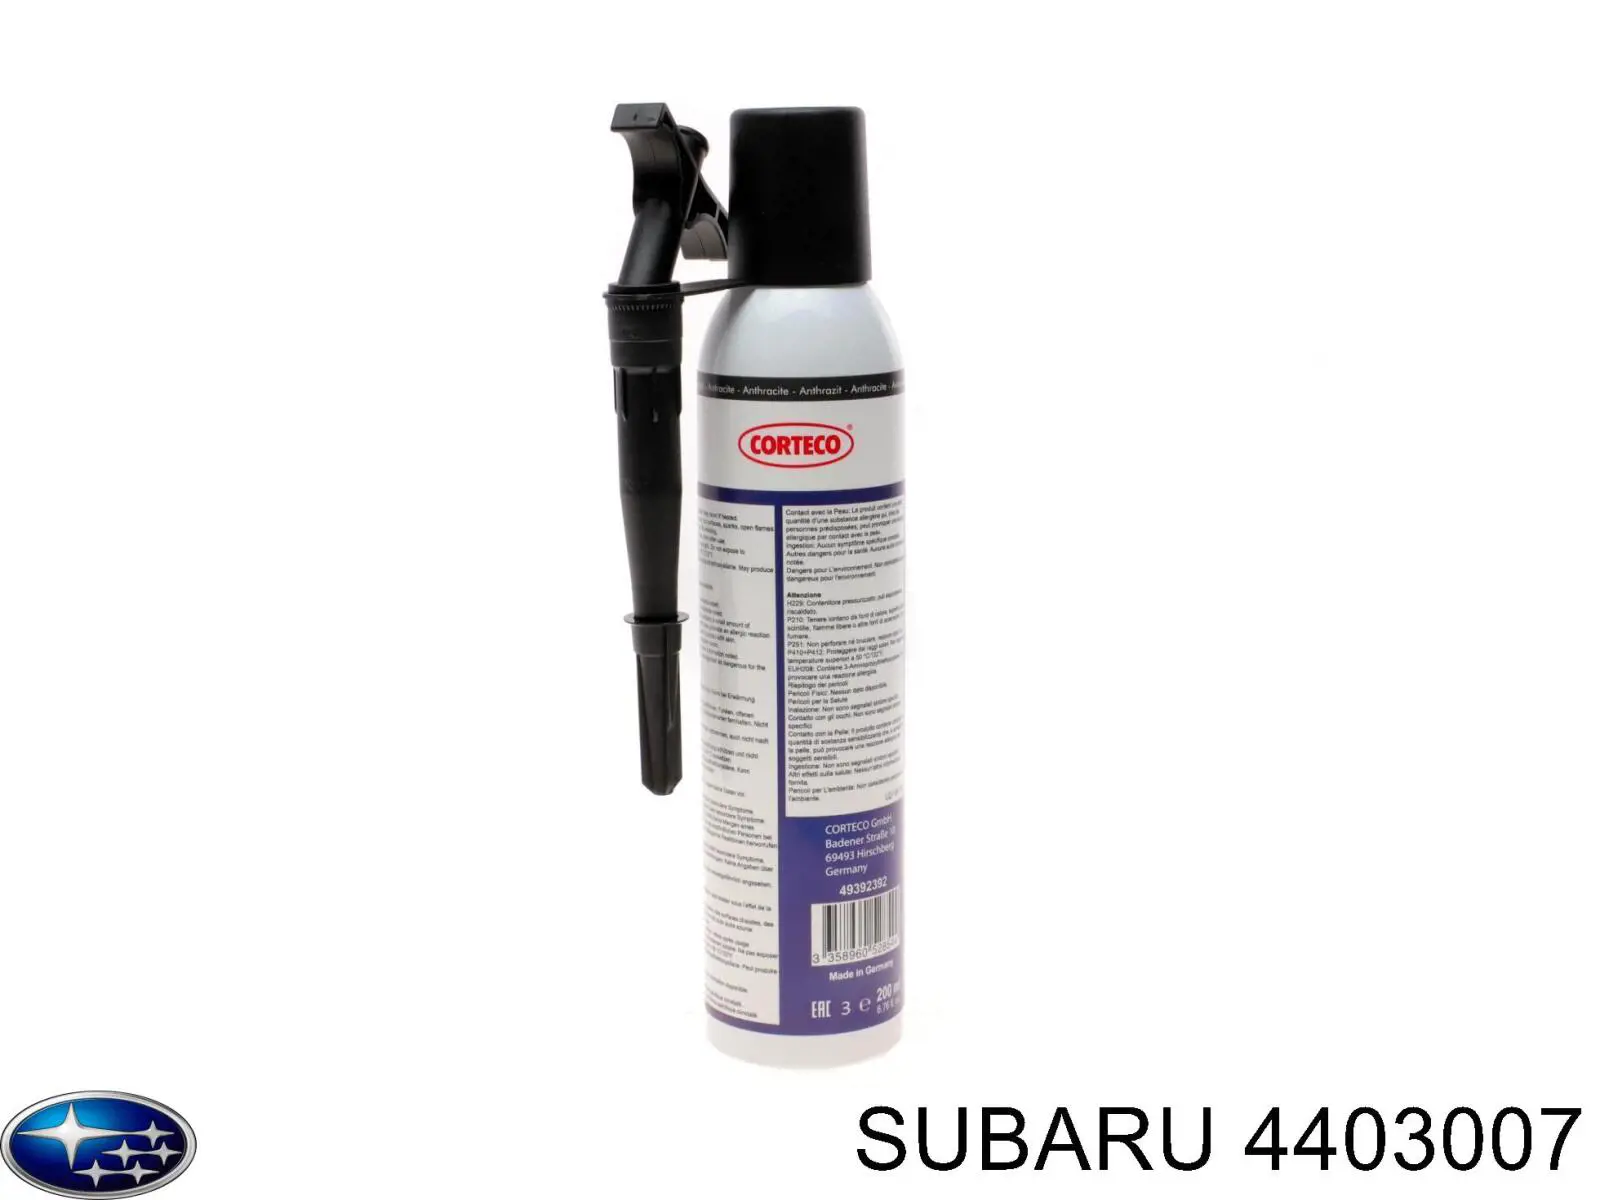 4403007 Subaru selante para motores termorresistente